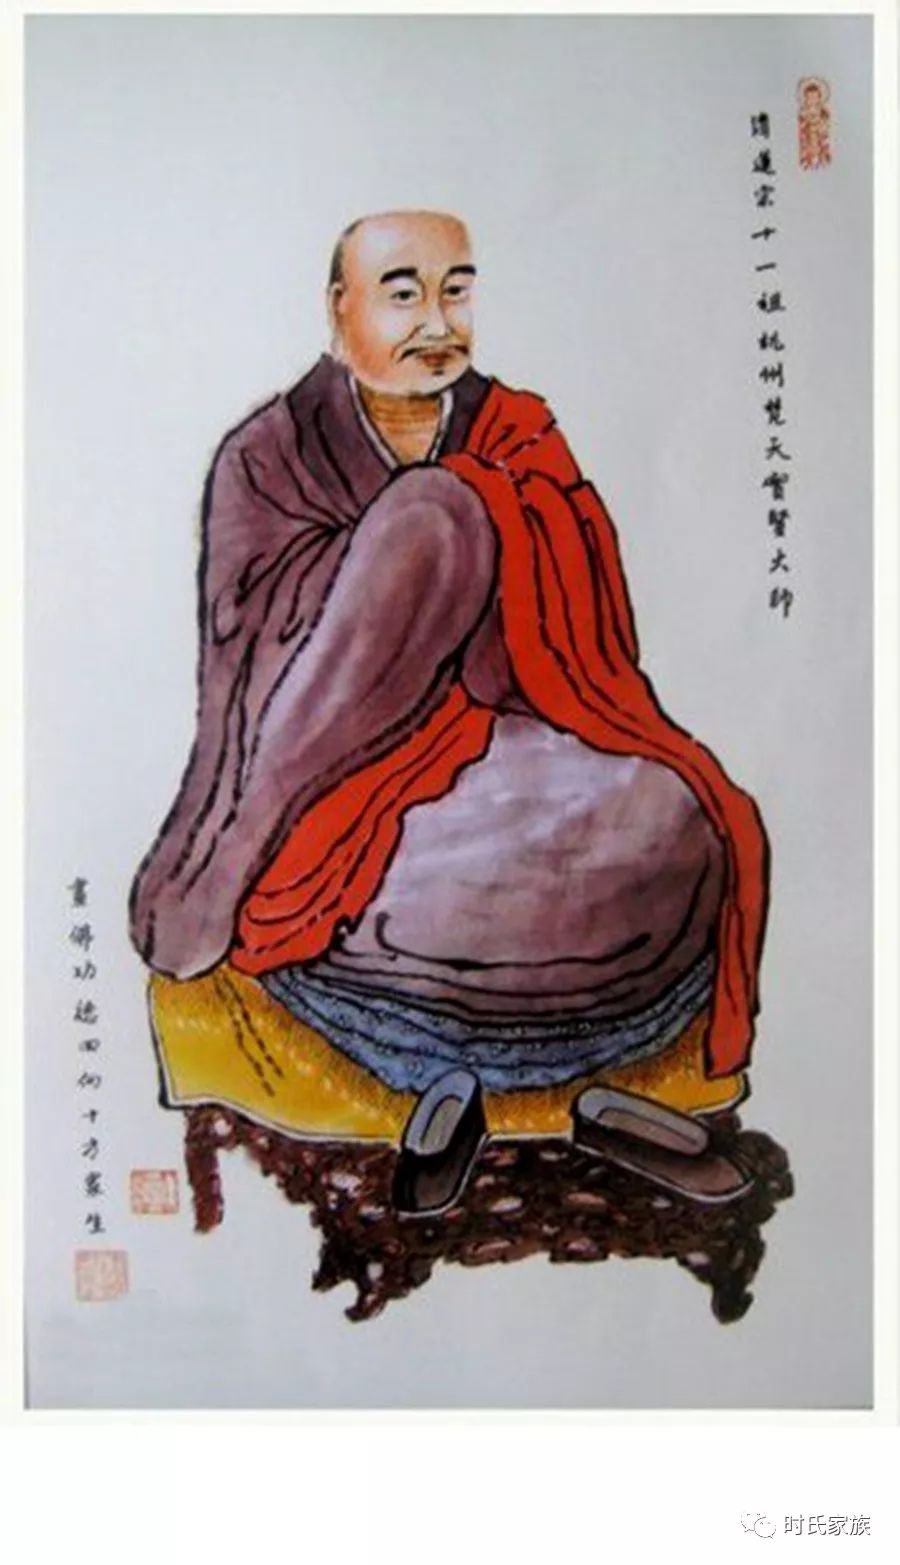 名人 中国净土宗第十一代祖师省庵大师的佛学成就